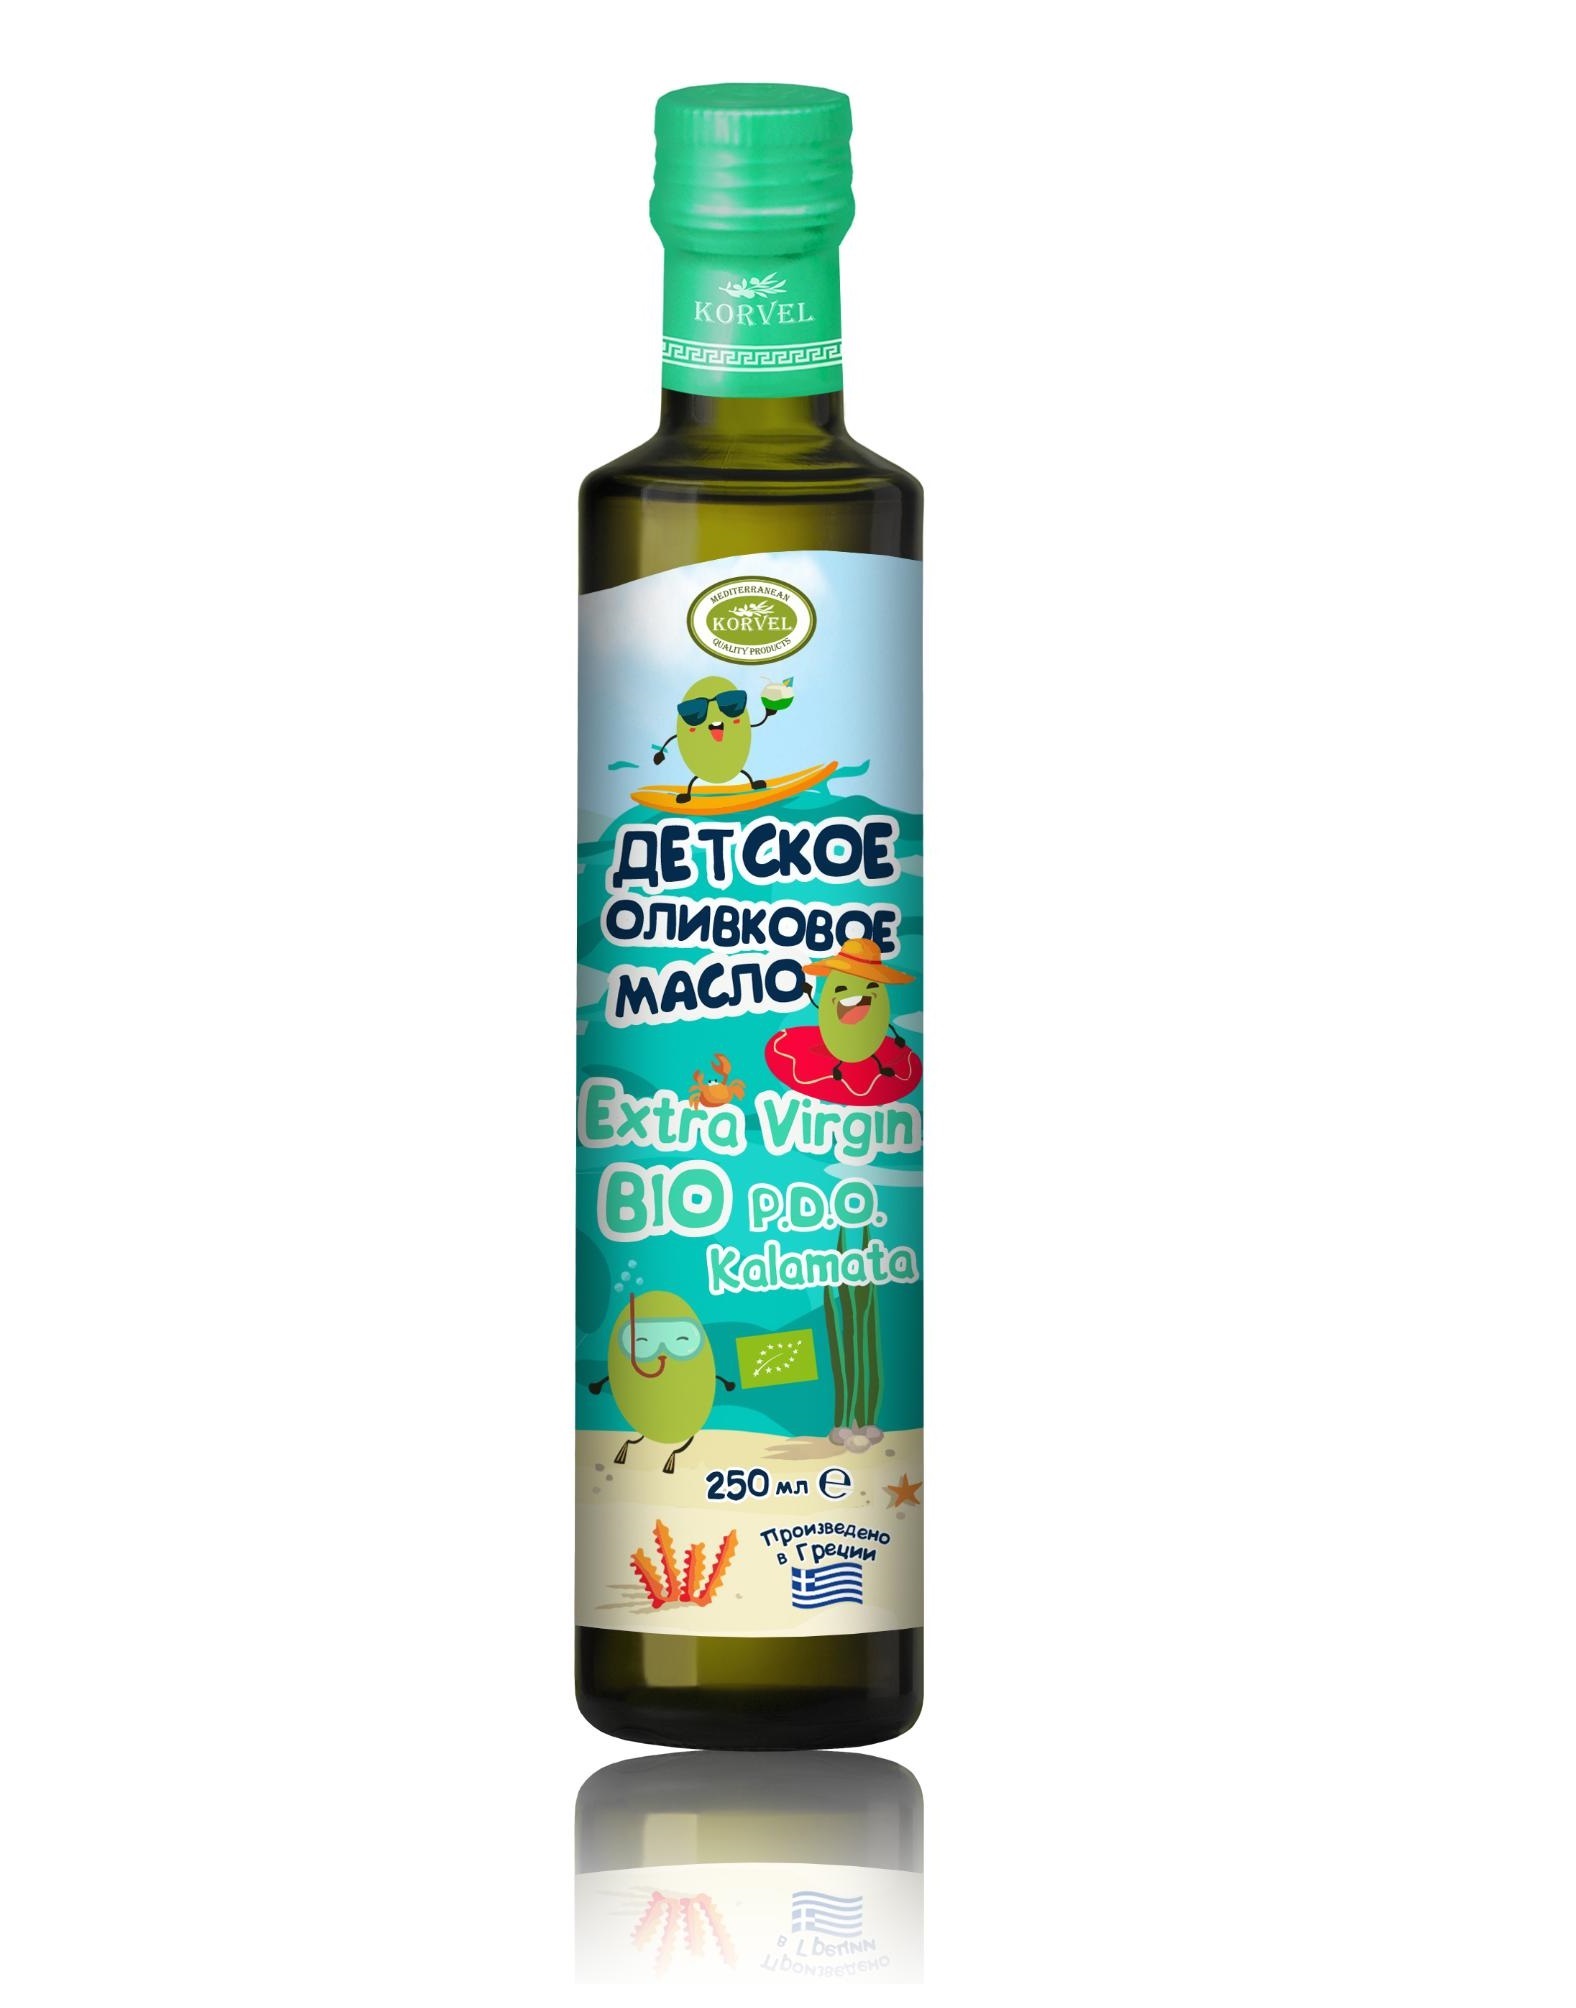 Детское оливковое масло Korvel BIO Extra Virgin P.D.O. Каламата 250 мл